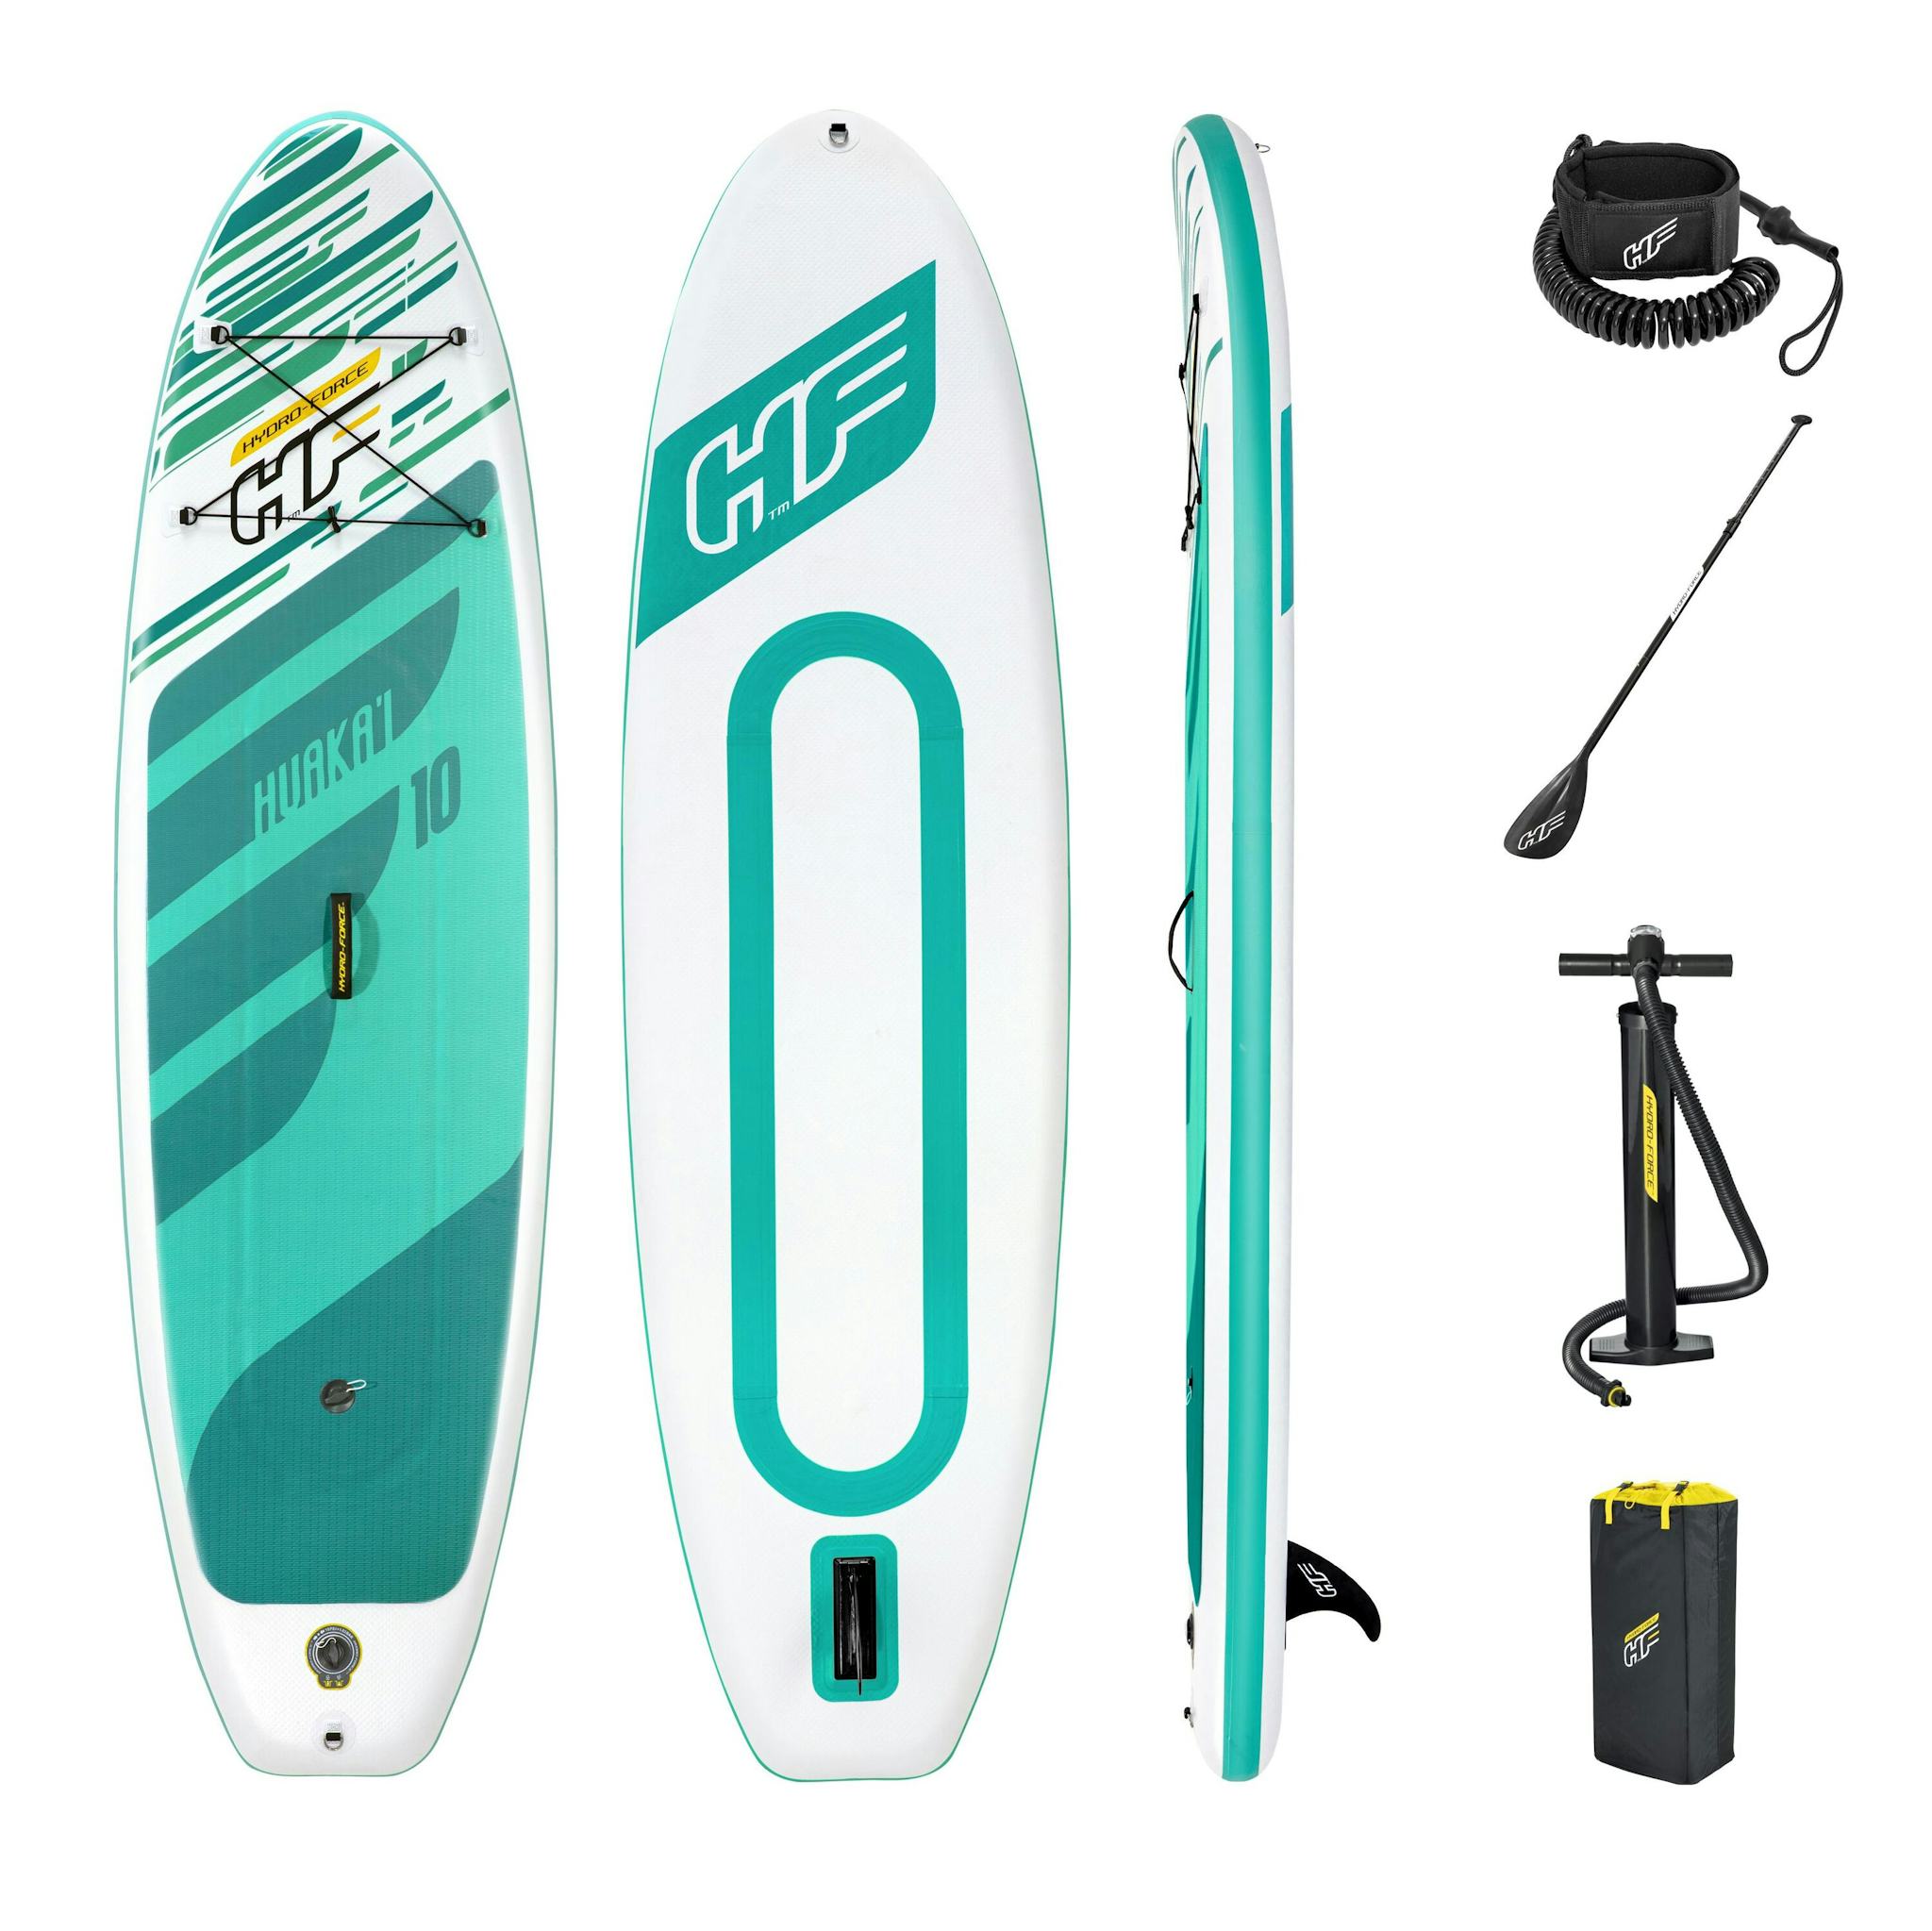 Sports d'eau Paddle SUP gonflable Huaka'i Tech Set Hydro-Force™ 305 x 84 x 12 cm, pompe, sac à dos, leash, pagaie Bestway 10